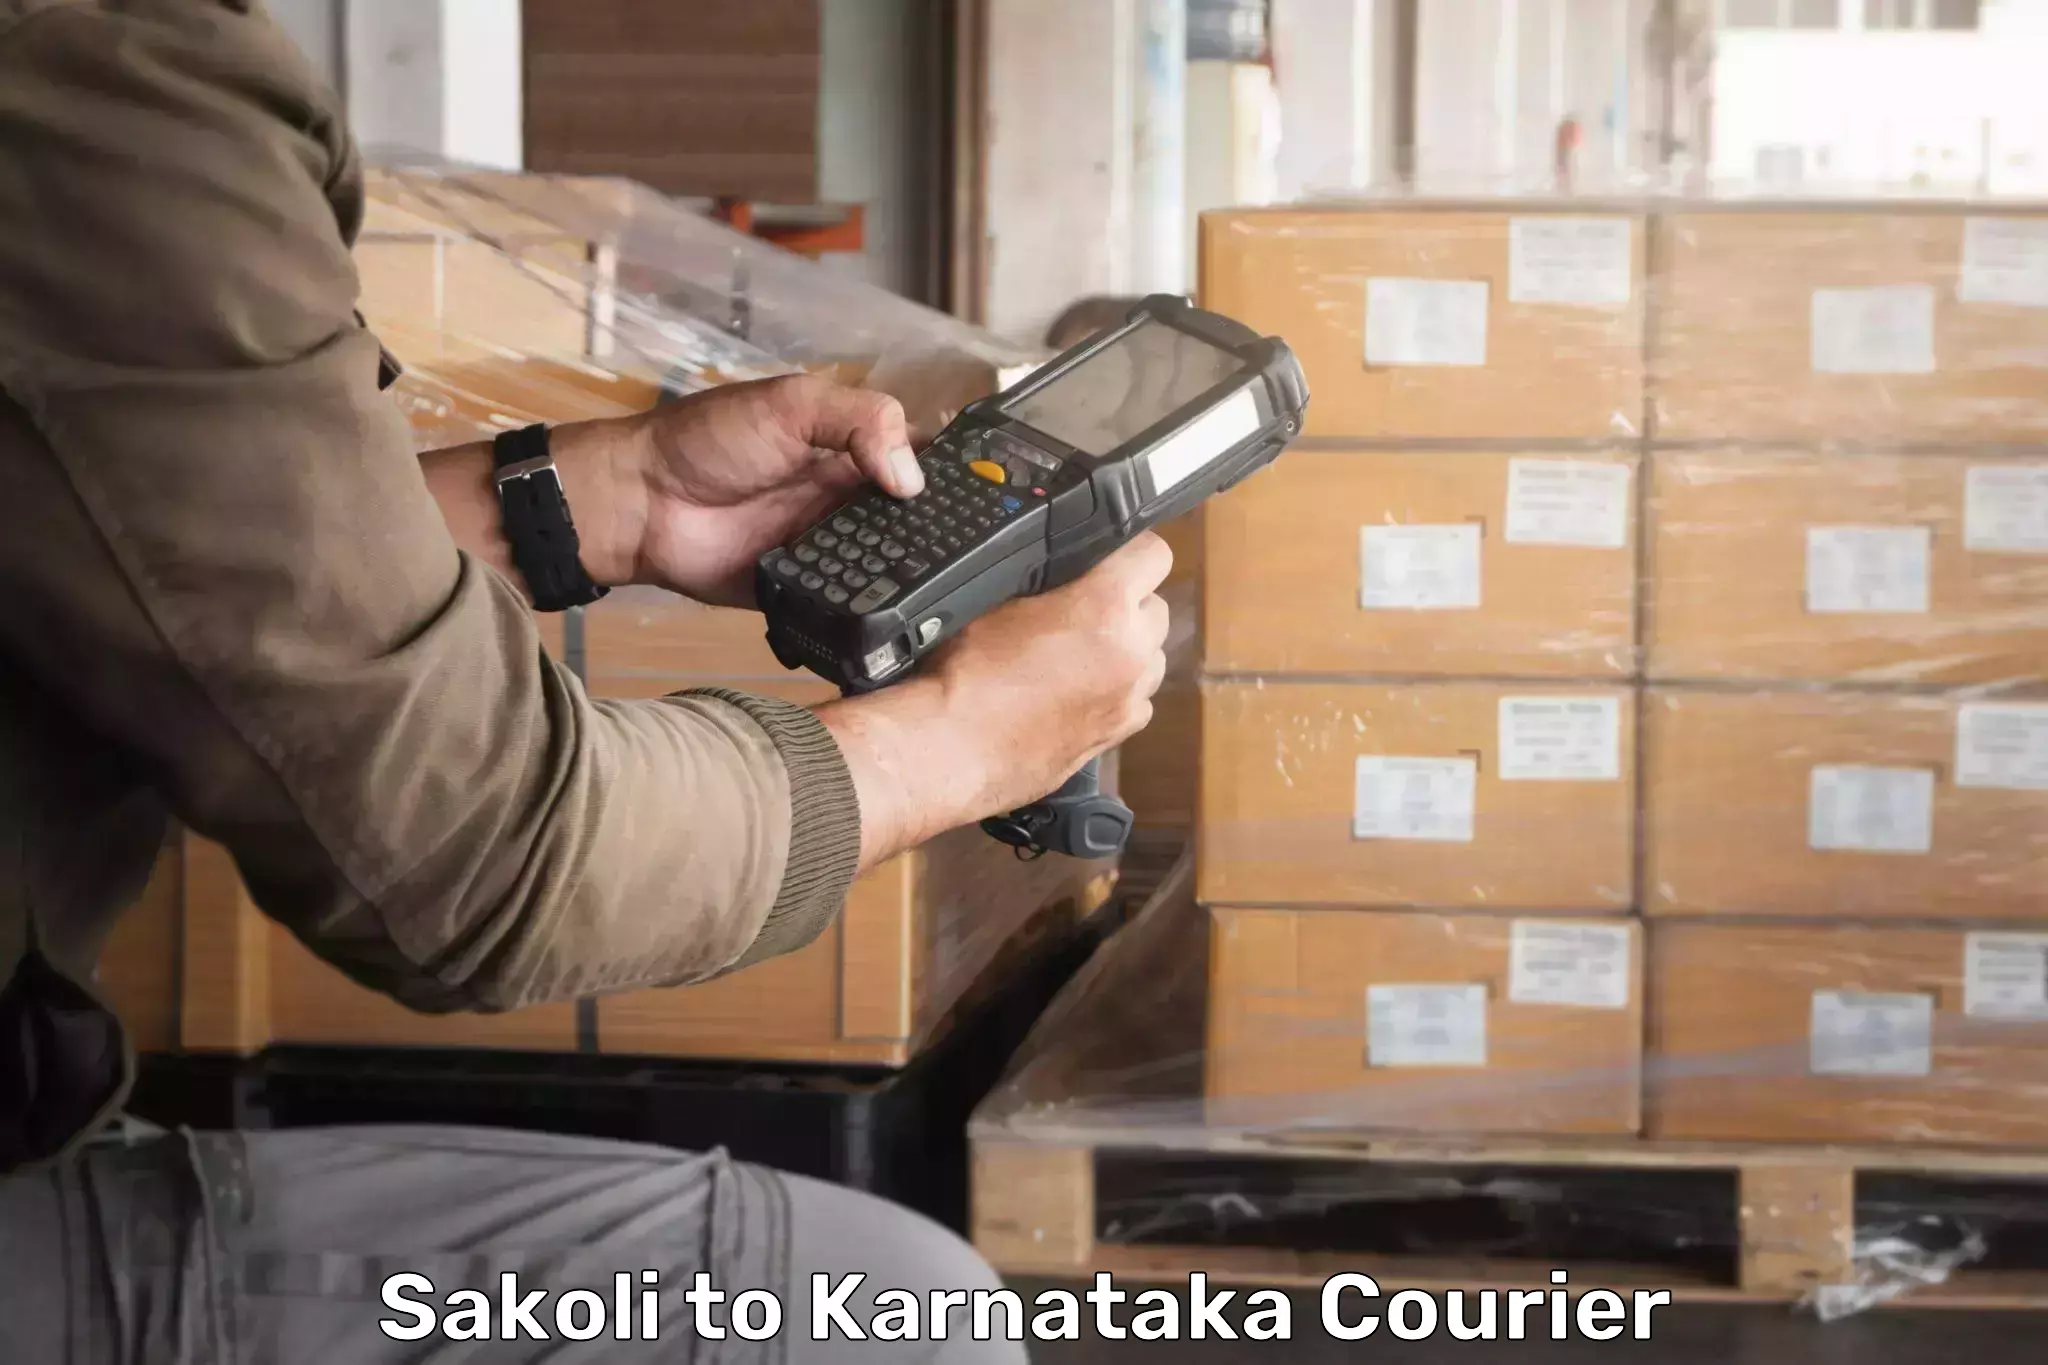 Budget-friendly shipping Sakoli to Karnataka